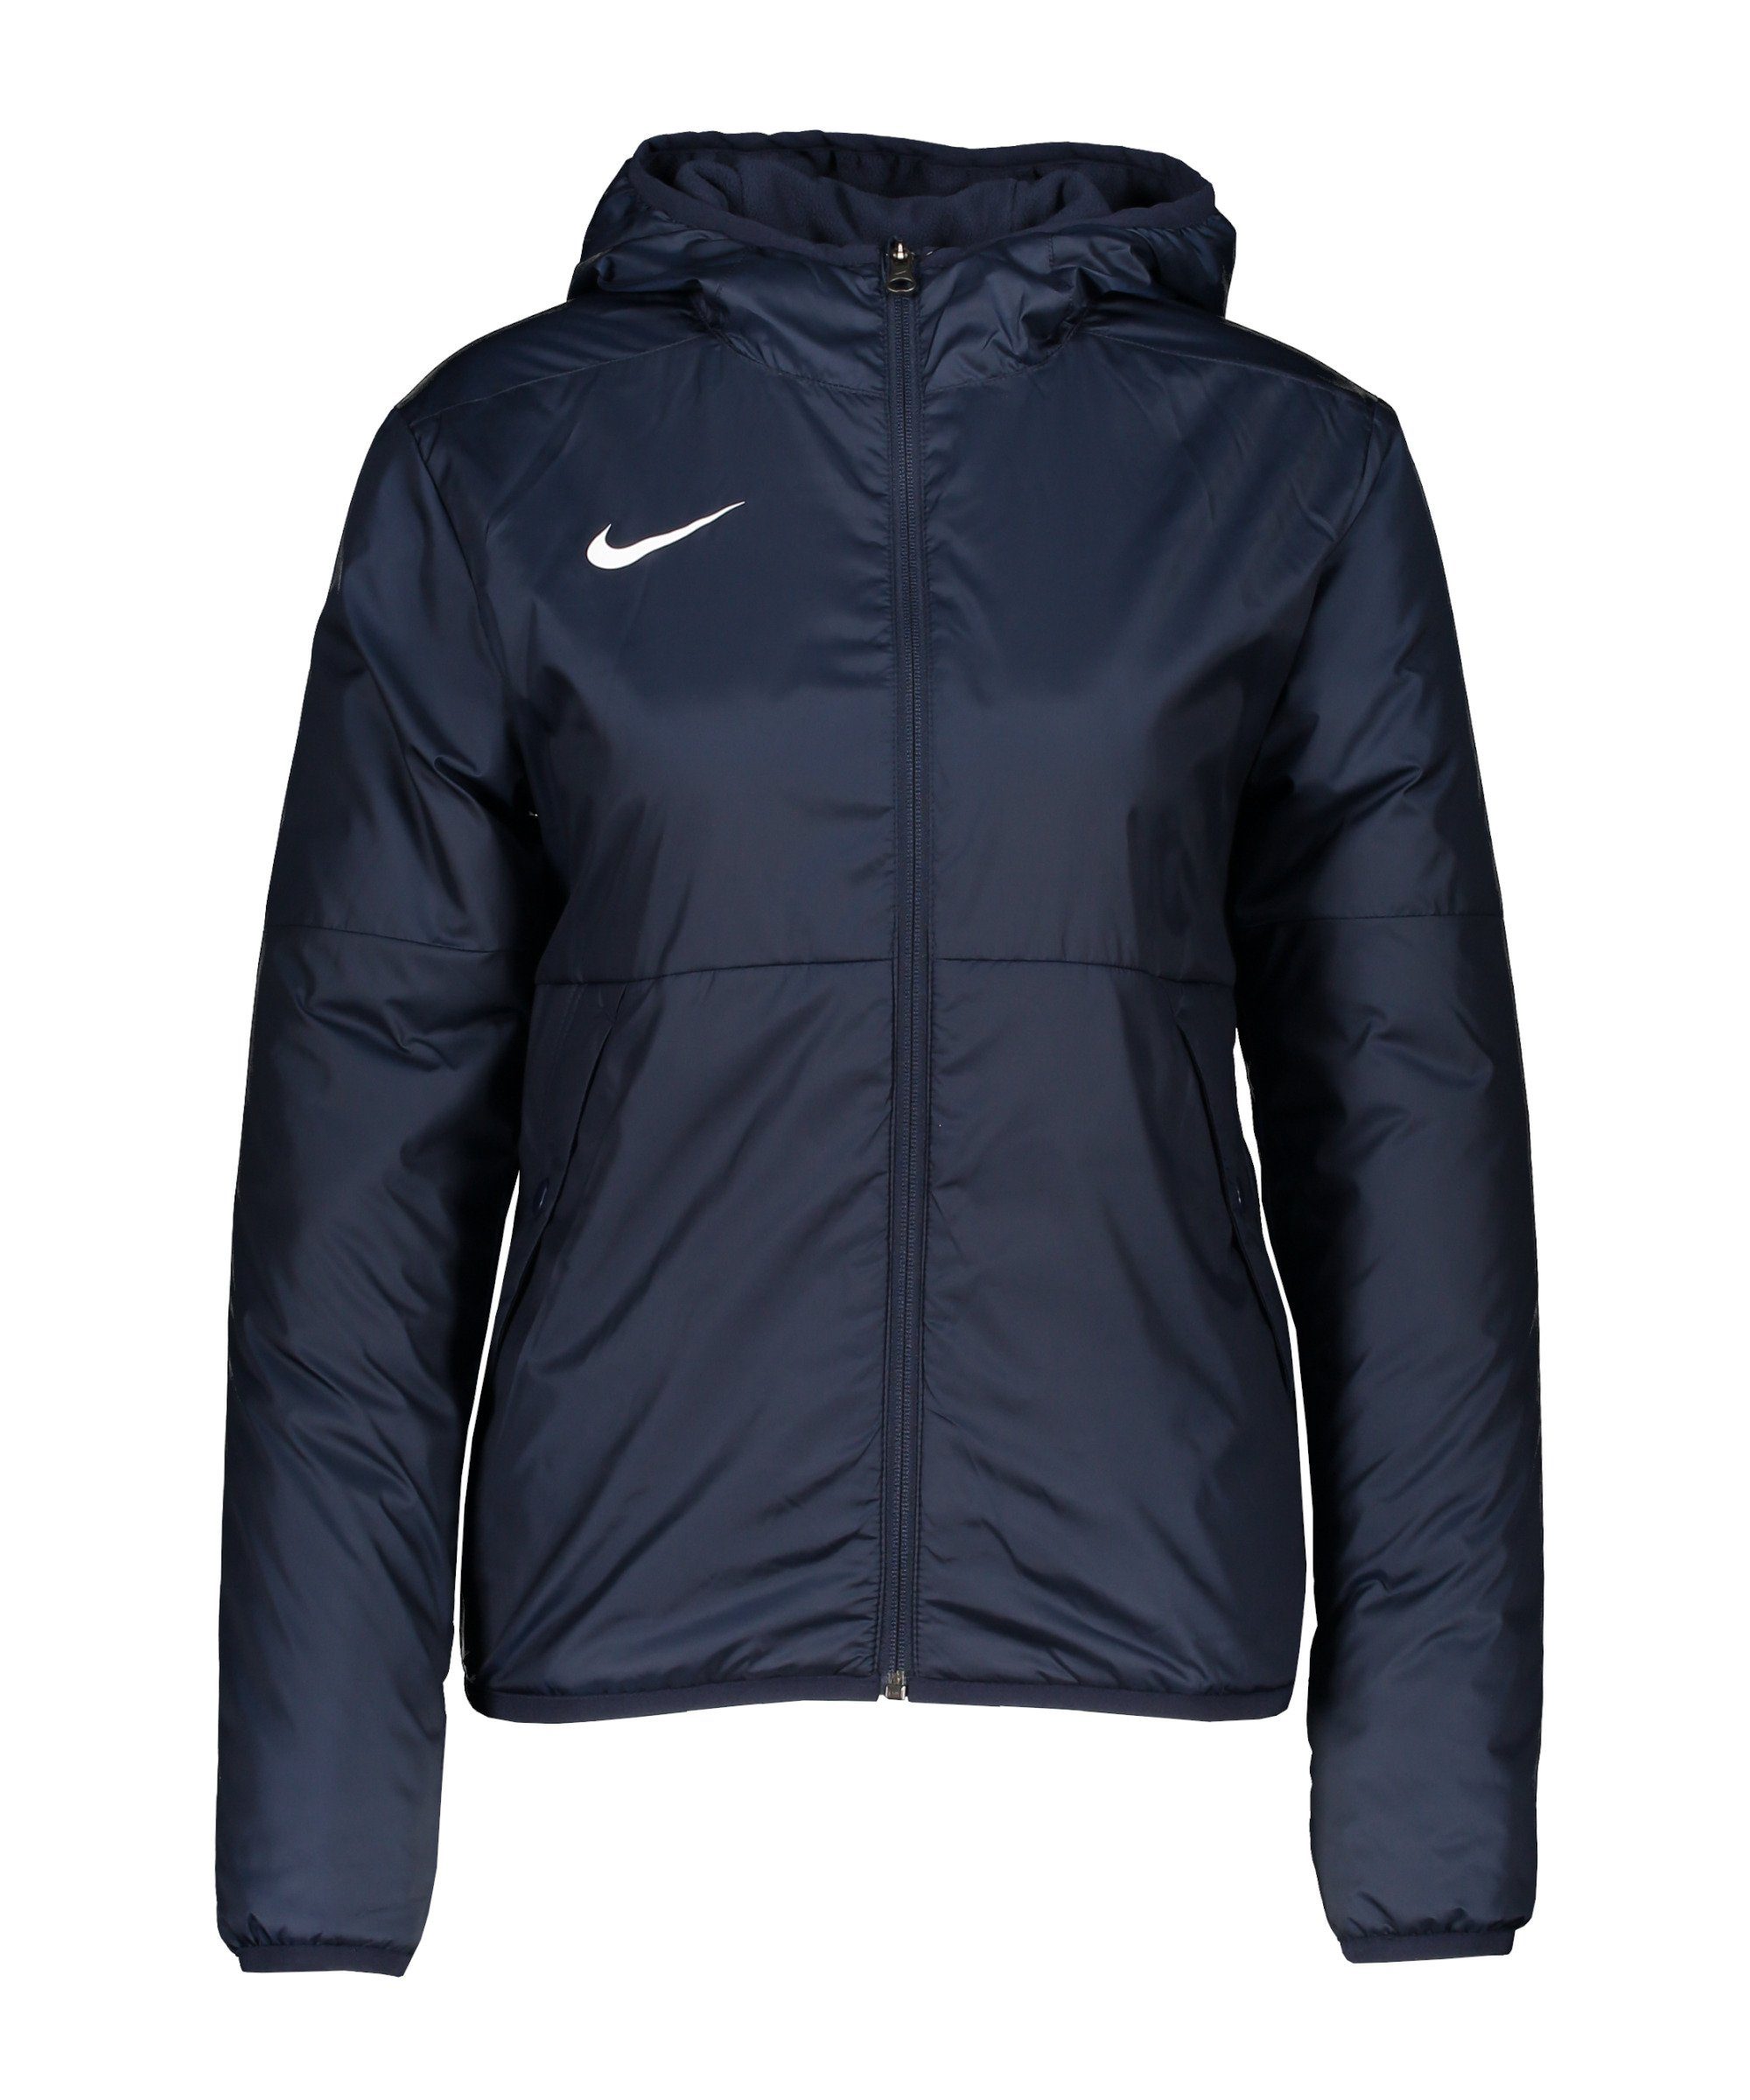 blauweiss Damen Repel Park 20 Trainingsjacke Regenjacke Nike